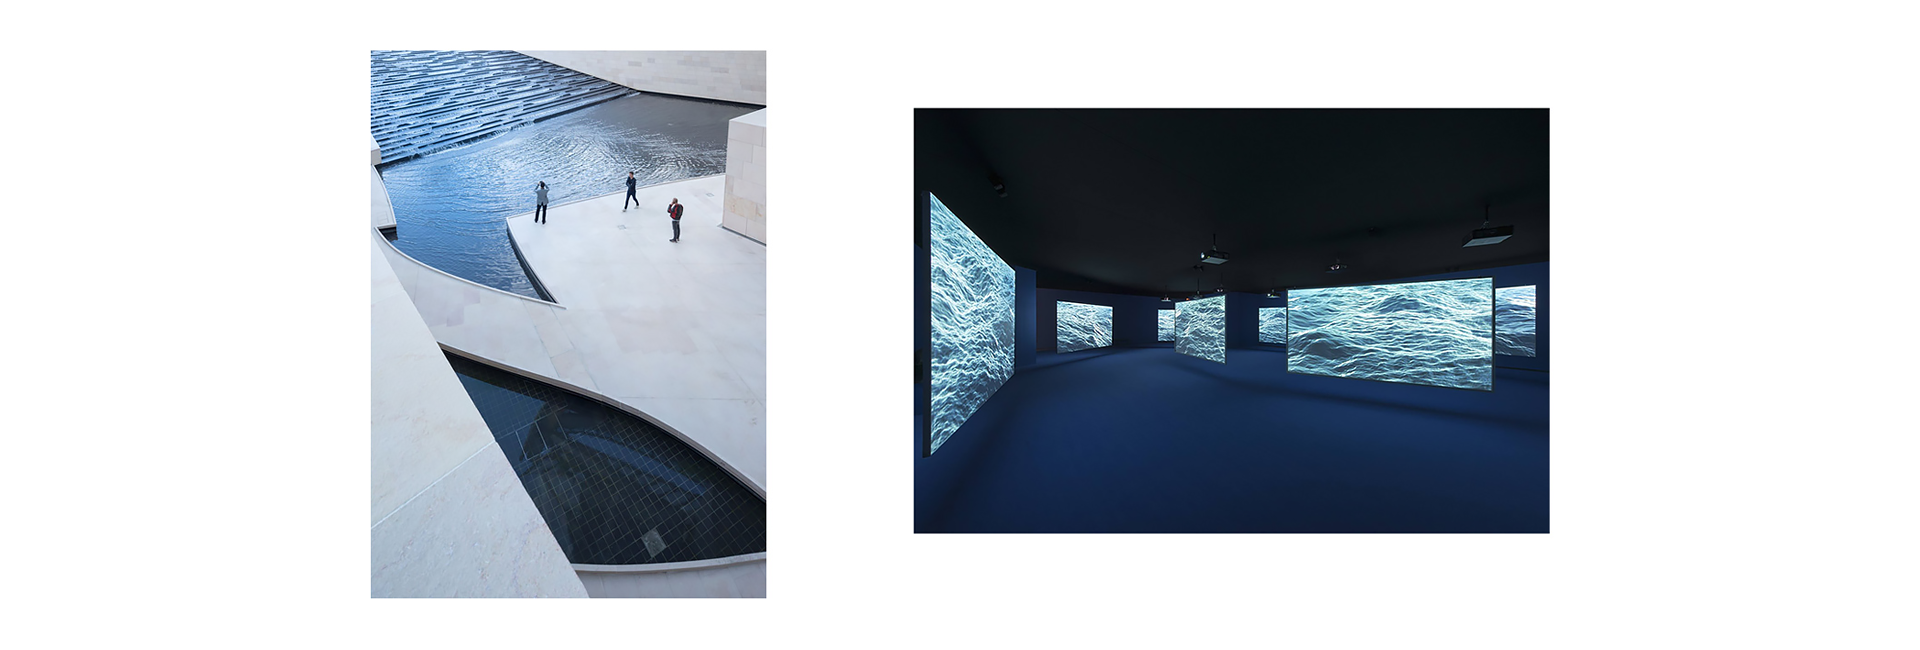 Как устроены частные музеи Louis Vuitton и Prada (фото 2)